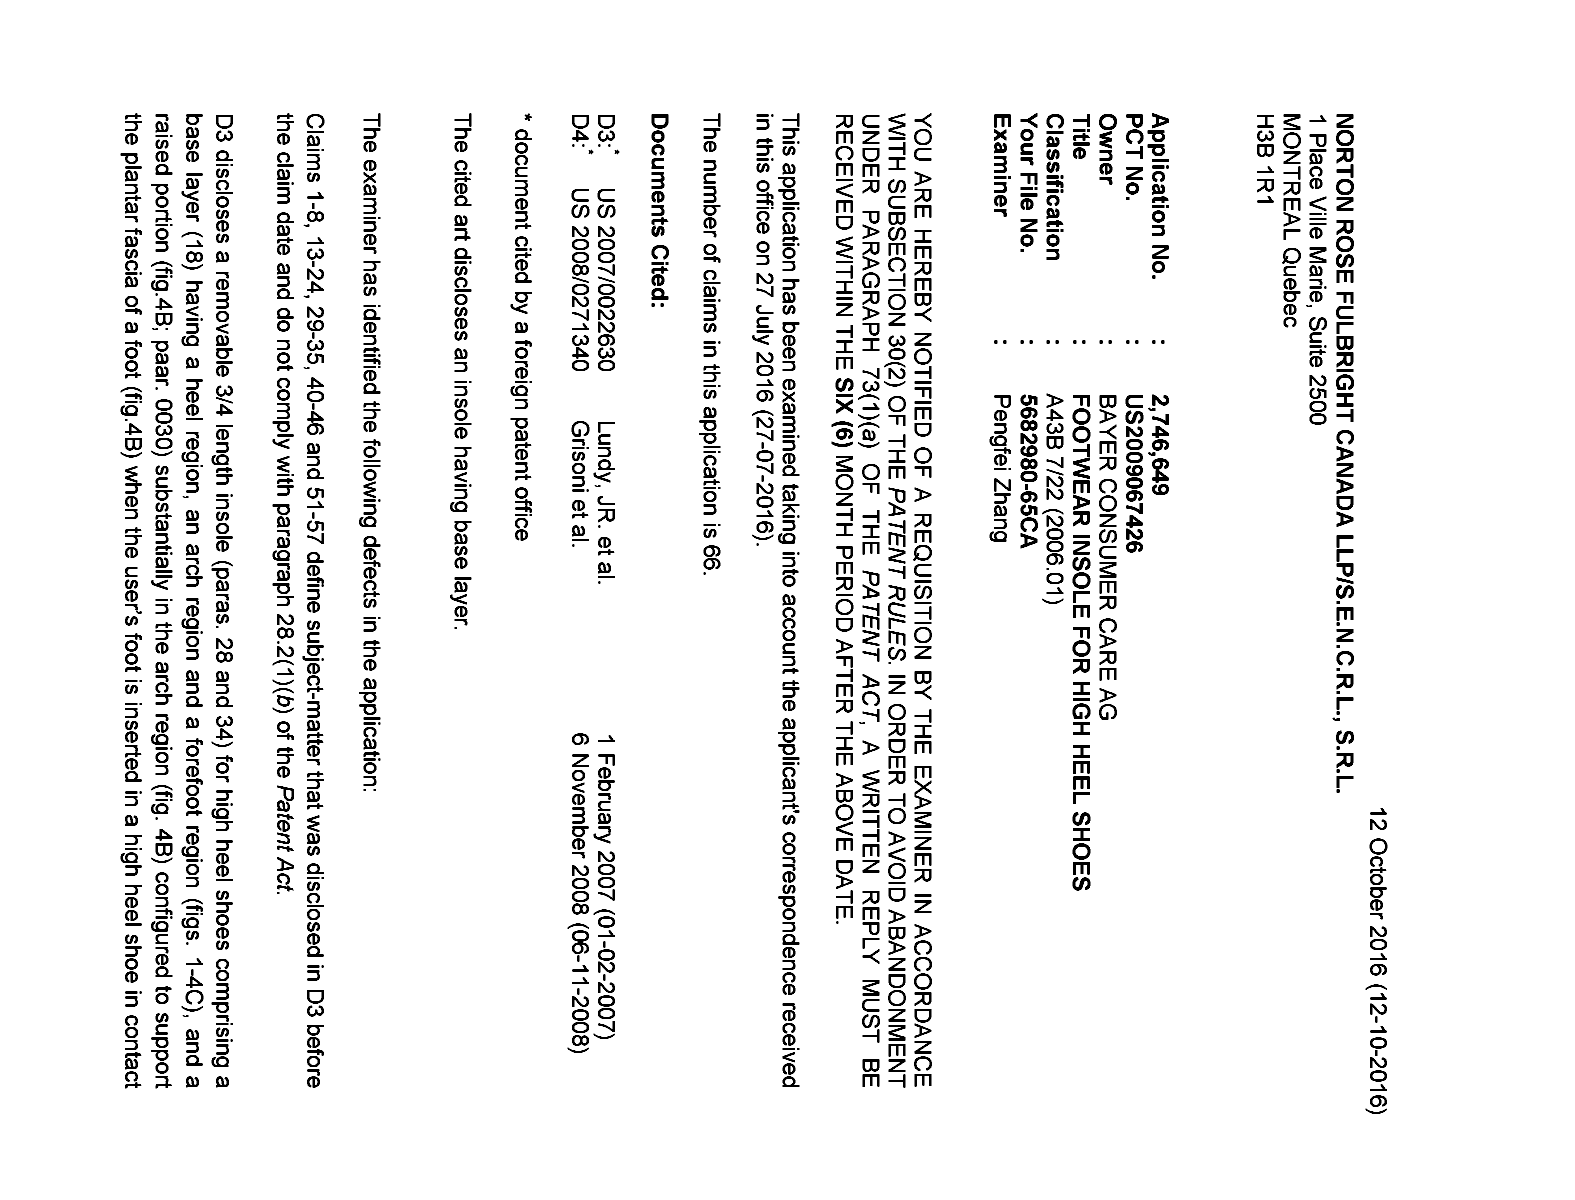 Document de brevet canadien 2746649. Poursuite-Amendment 20151212. Image 1 de 3